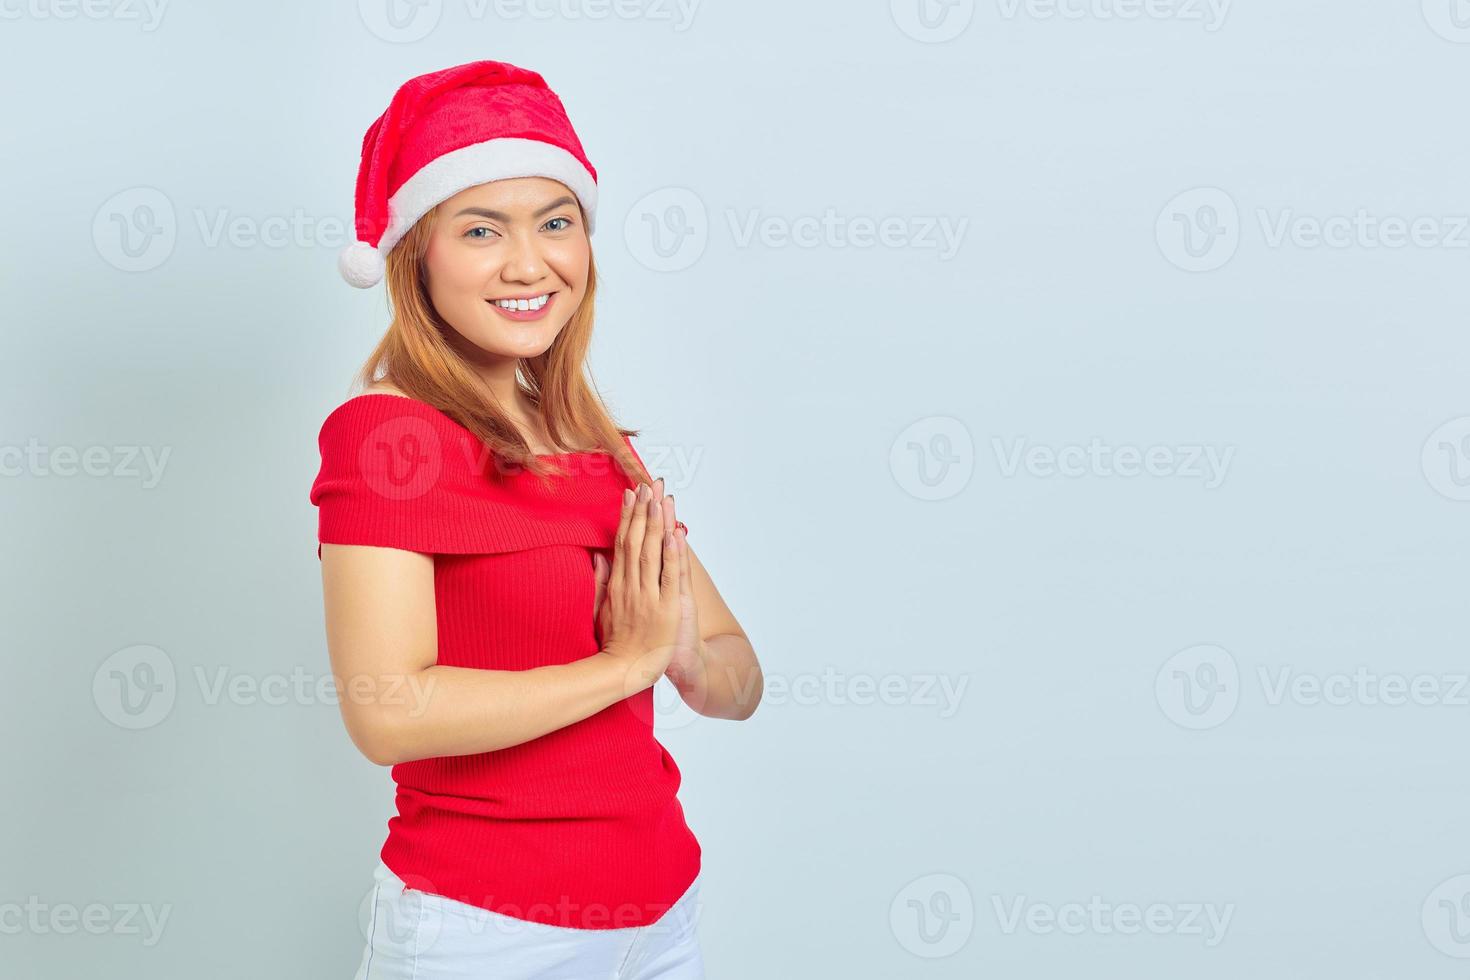 glimlachende jonge aziatische vrouw met kerstmuts die handen vasthoudt en zich optimistisch voelt op een witte achtergrond foto